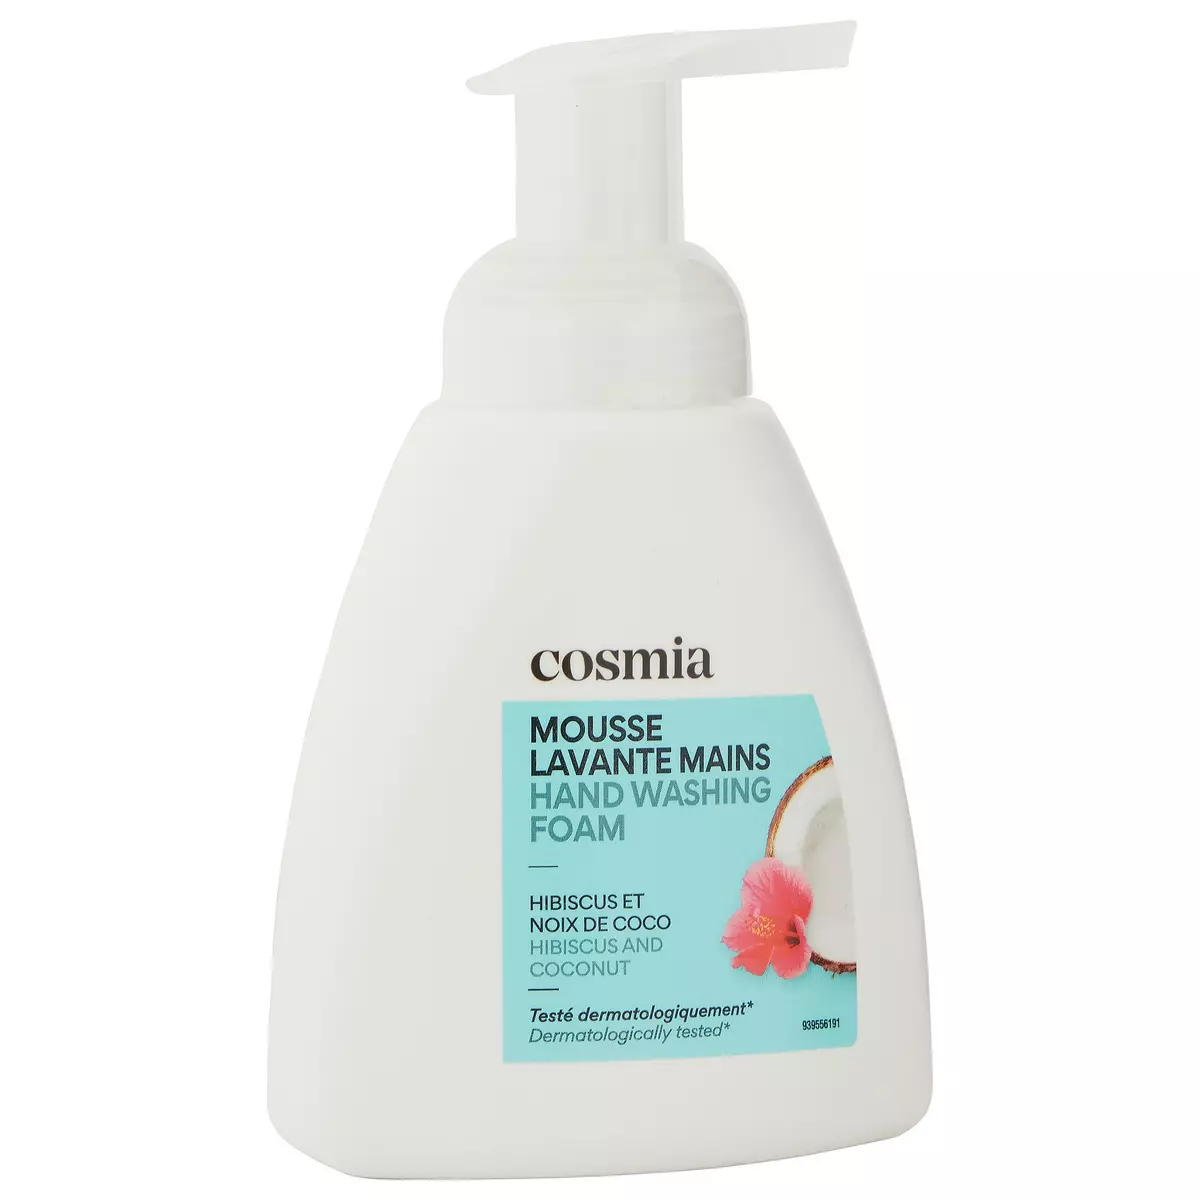 COSMIA Mousse lavante mains à l'hibiscus & coco 300ml